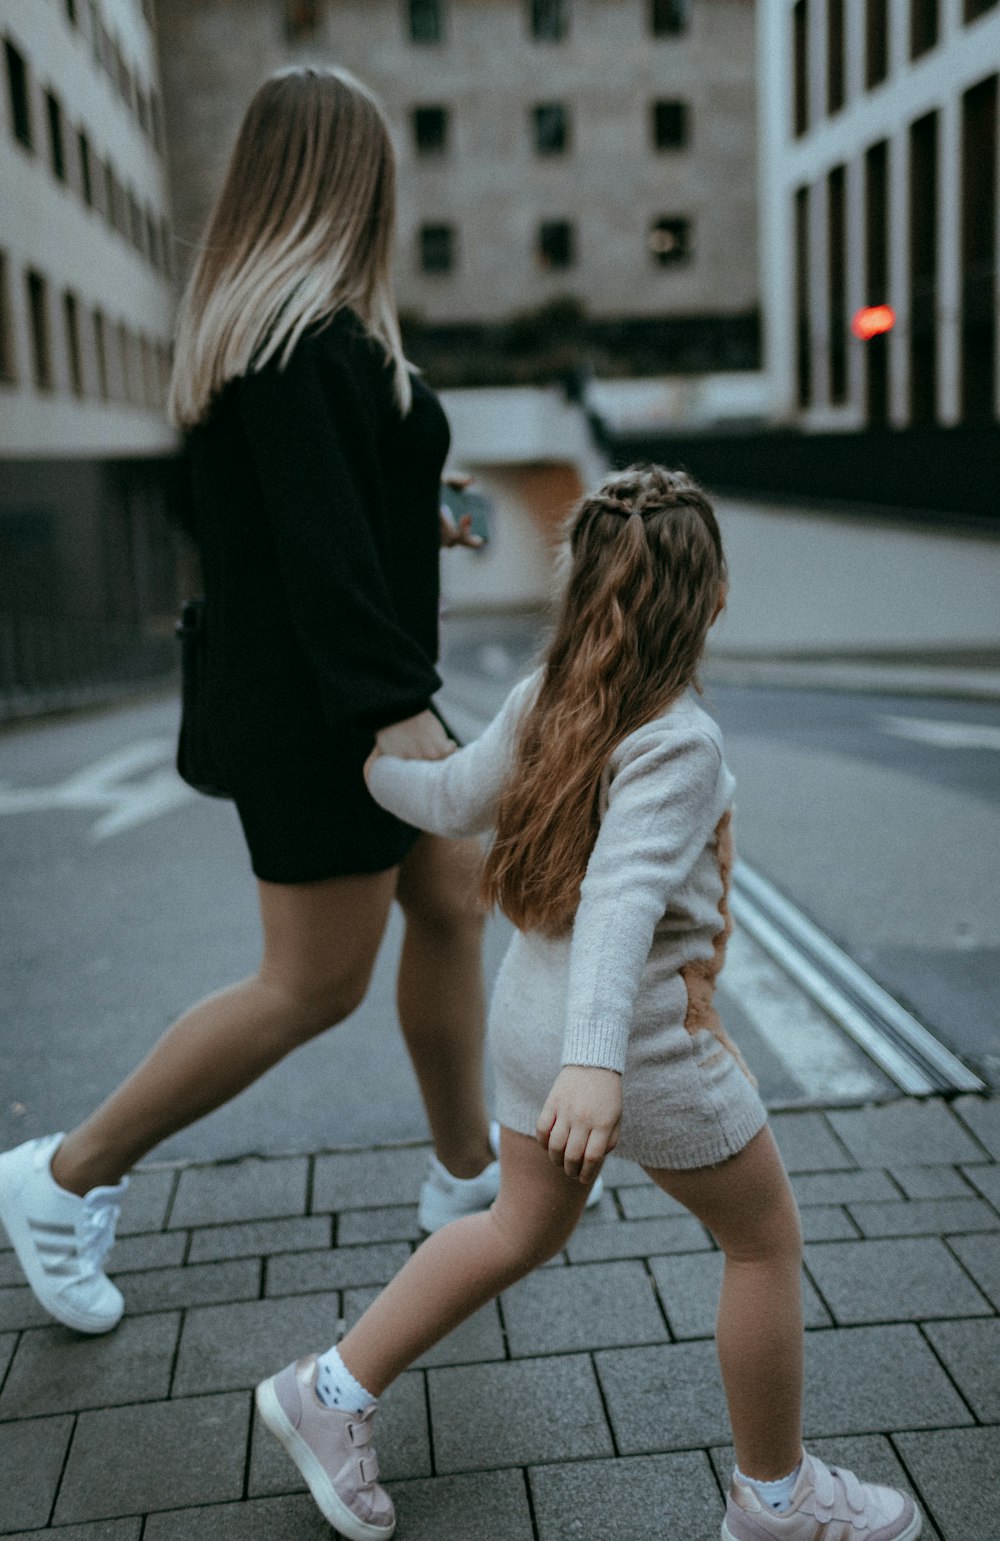 two women walking on a sidewalk